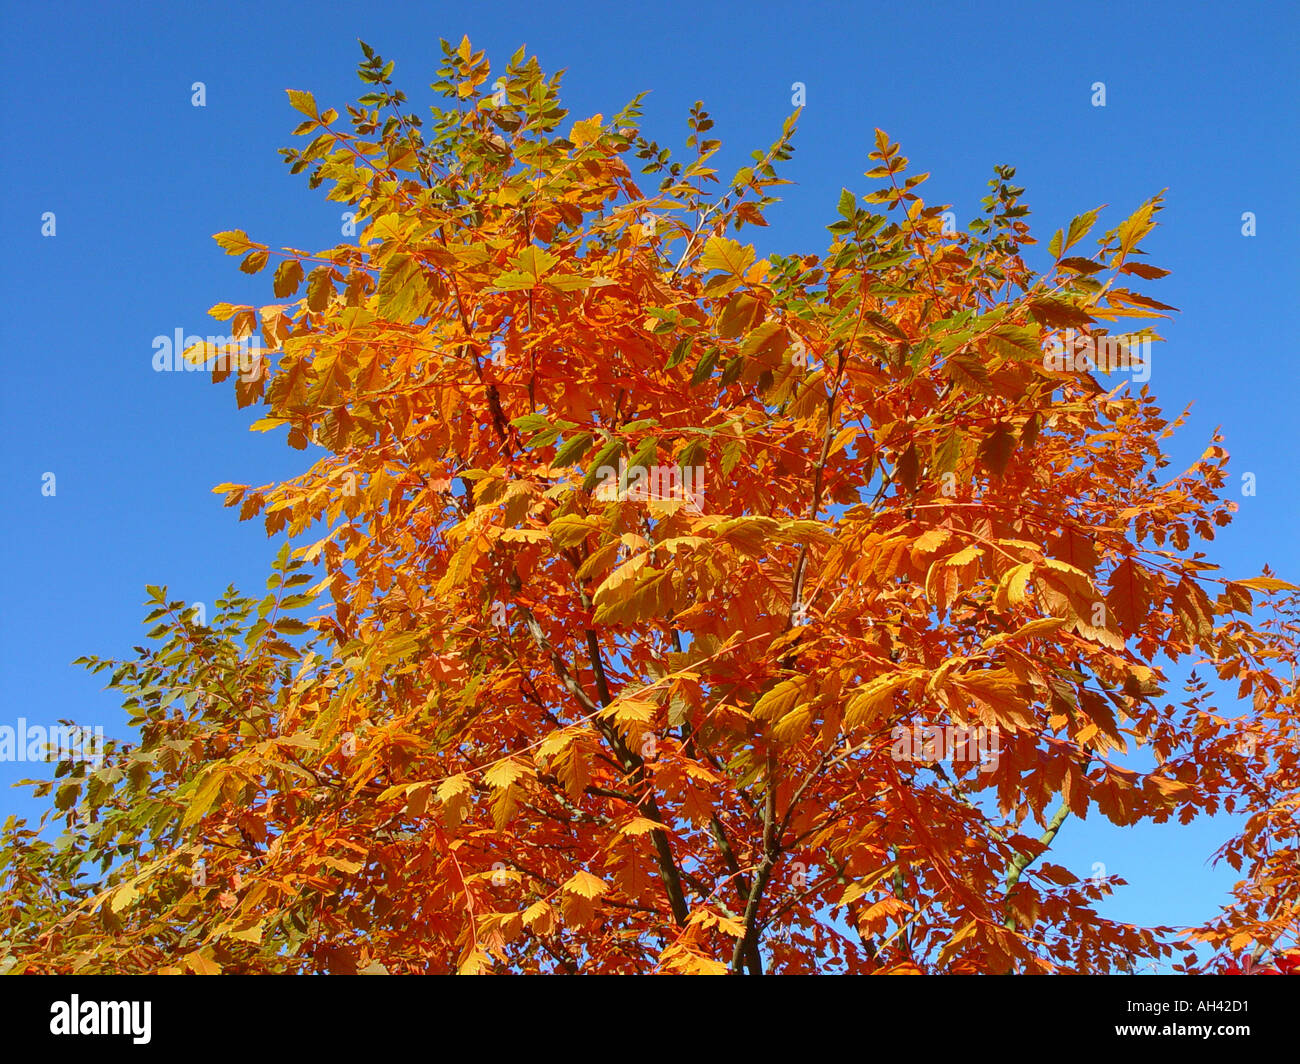 Koelreuteria paniculata autumn fall foliage against blue sky Stock Photo